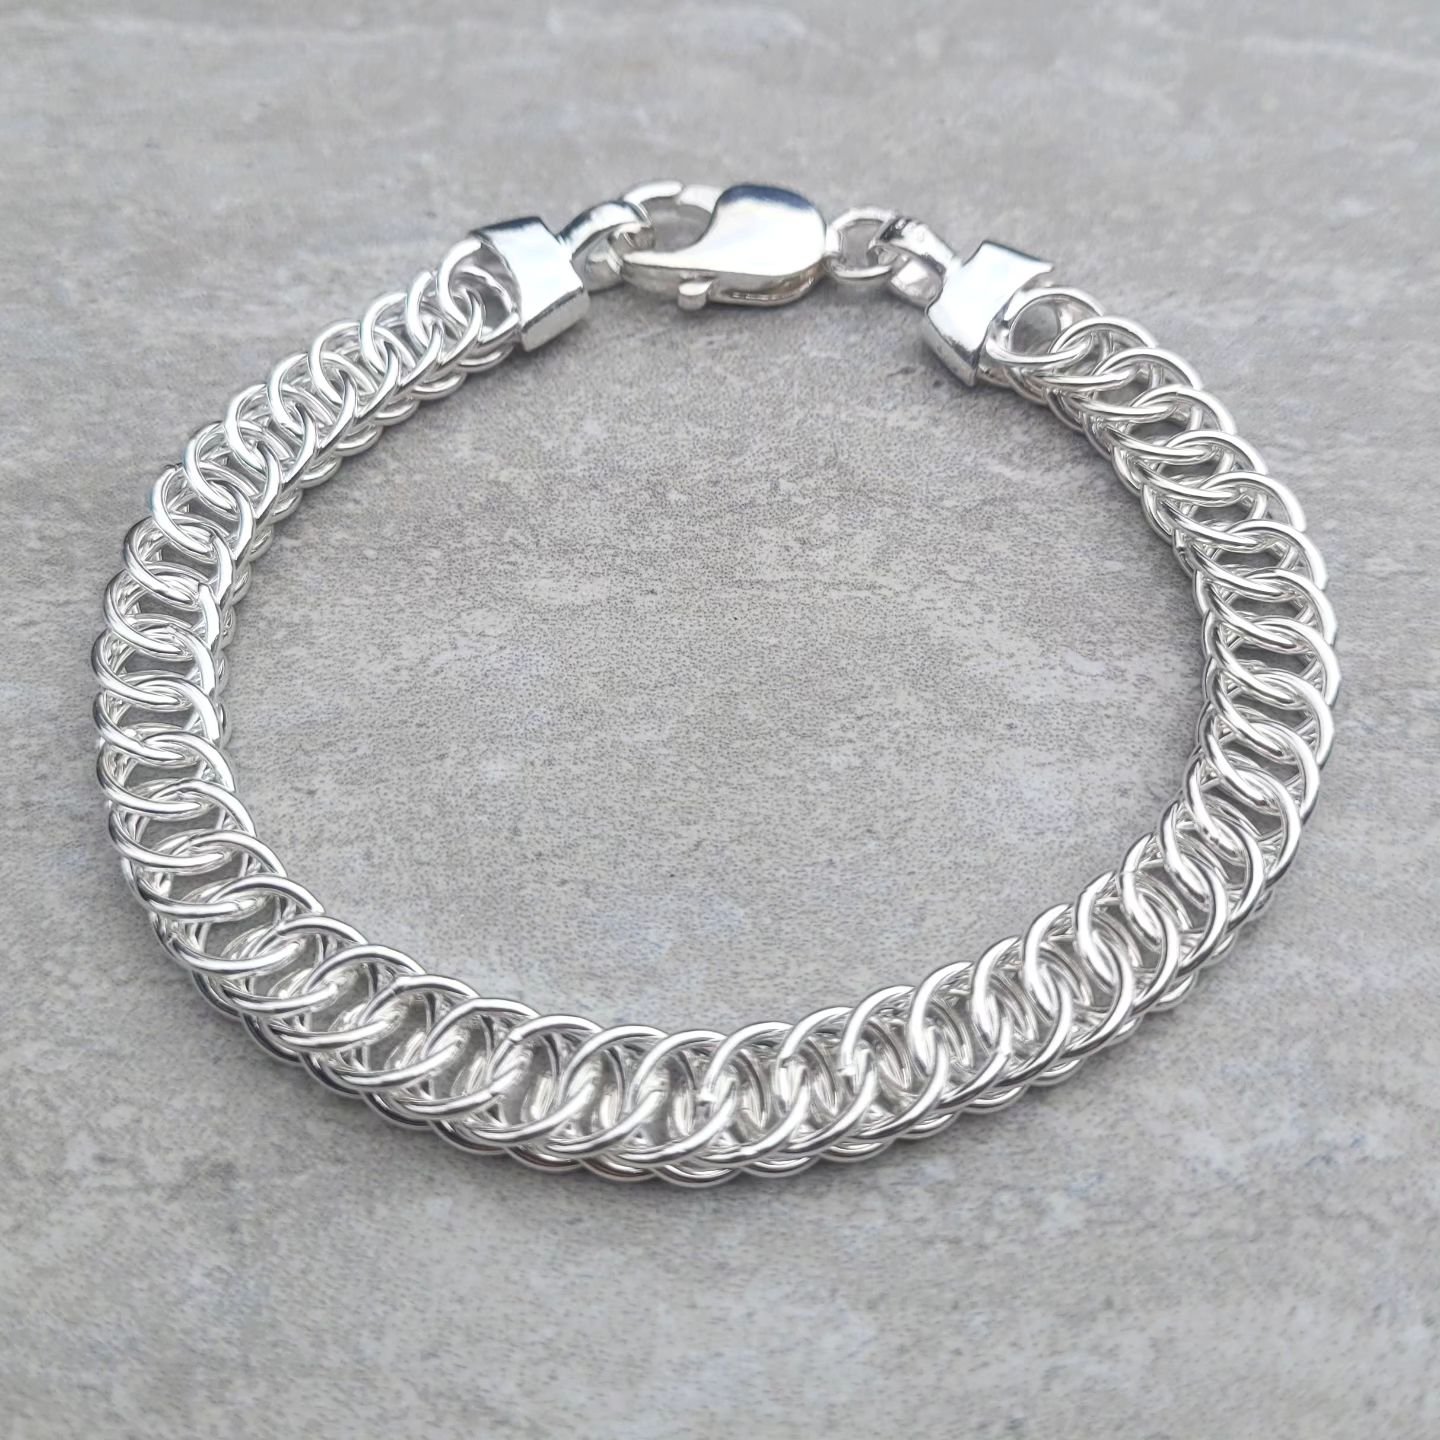 Silver is back baby!💙 ... Gorgeous new heavy bracelet with unusual herringbone link and heavy clasp, it's a beauty! Sterling Silver #silverbracelet #statementbracelet #wristwear #armcandy #wristcandy #wriststacks #braceletstacks